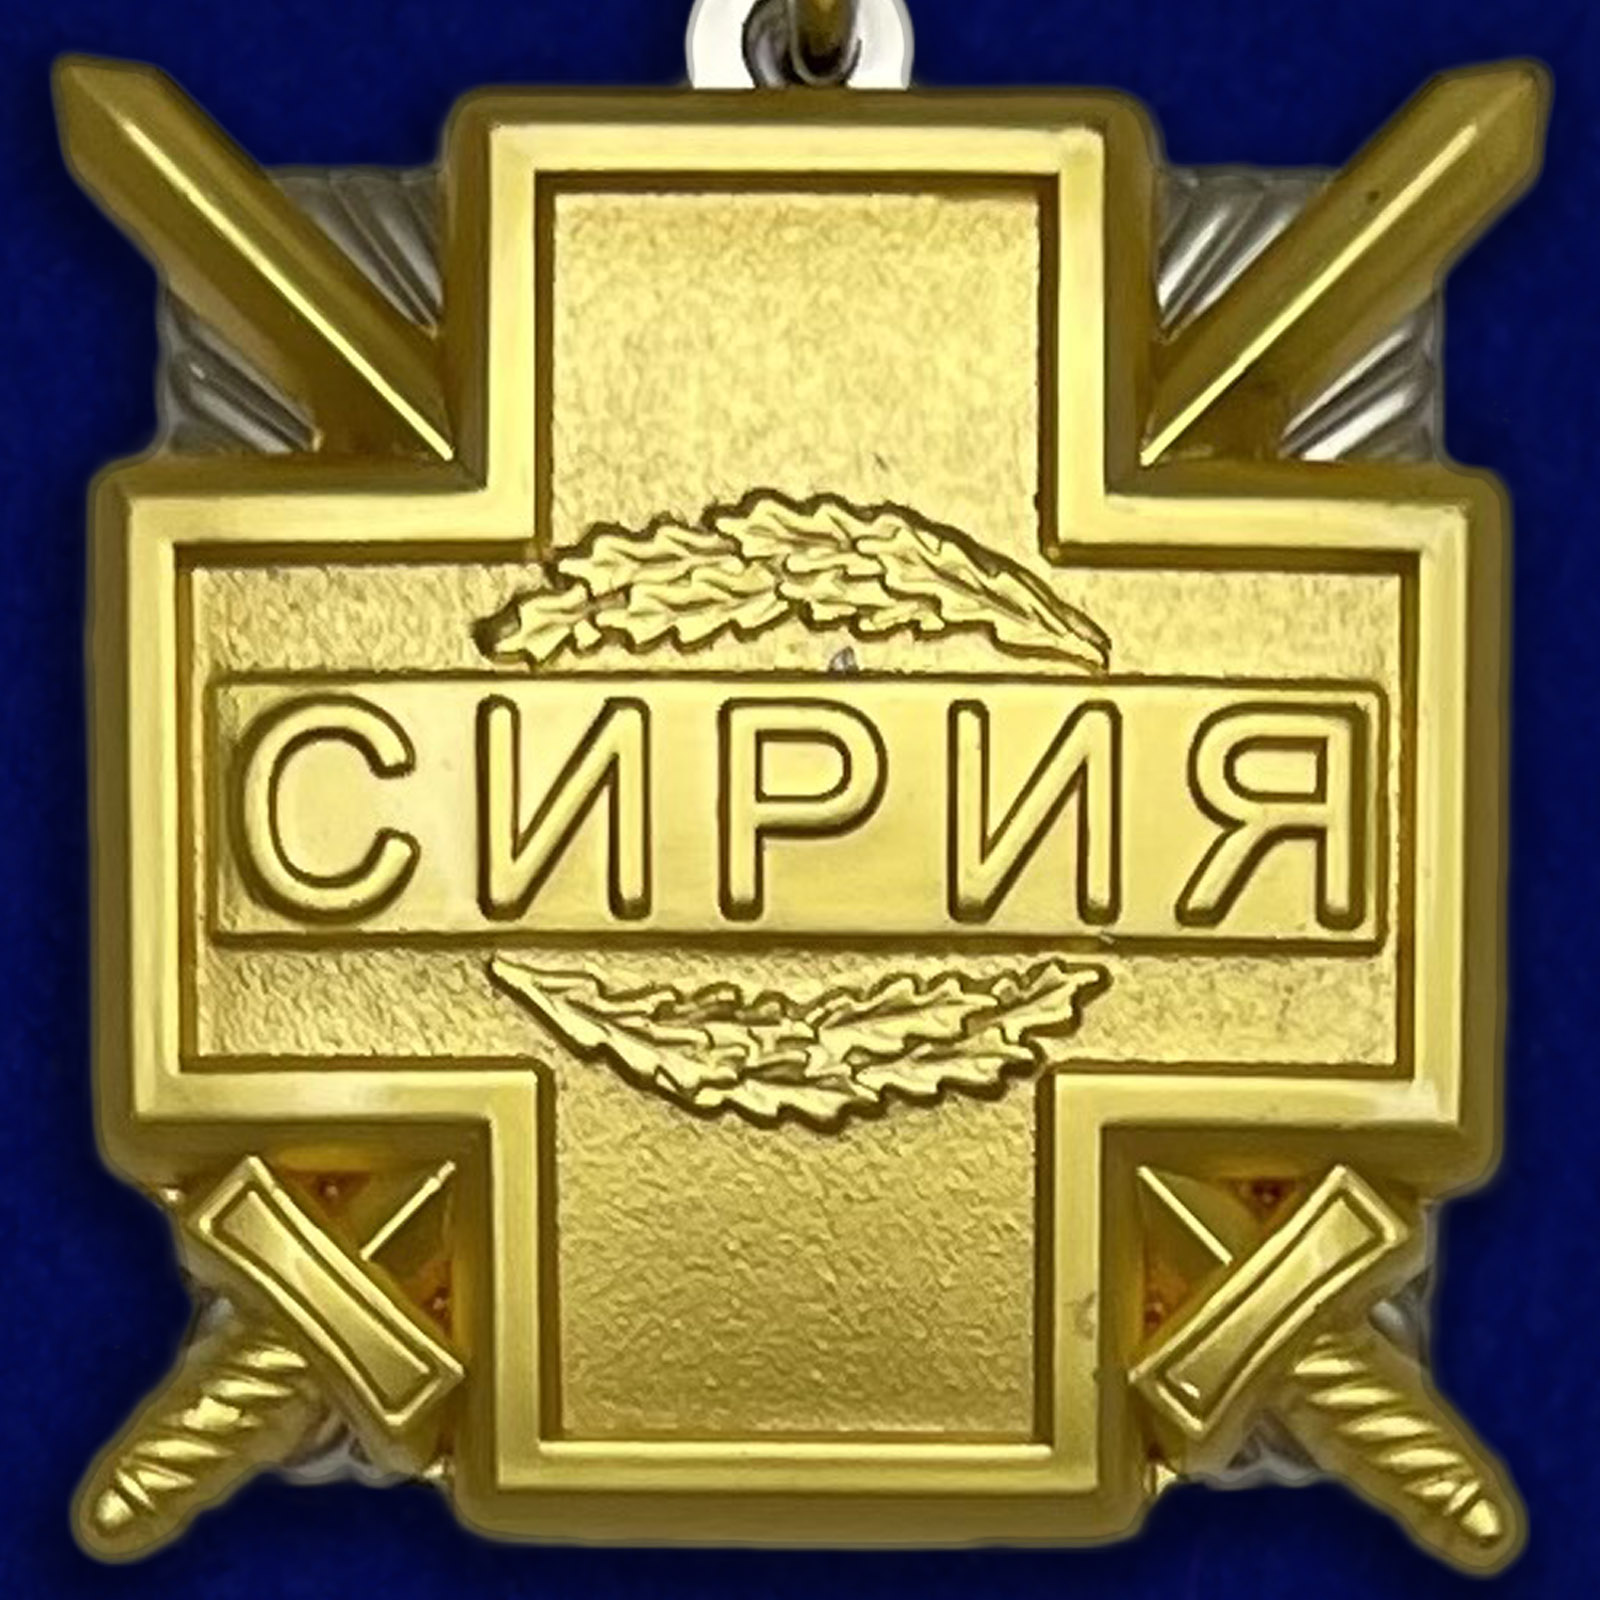 Медаль «Участнику военной операции в Сирии»